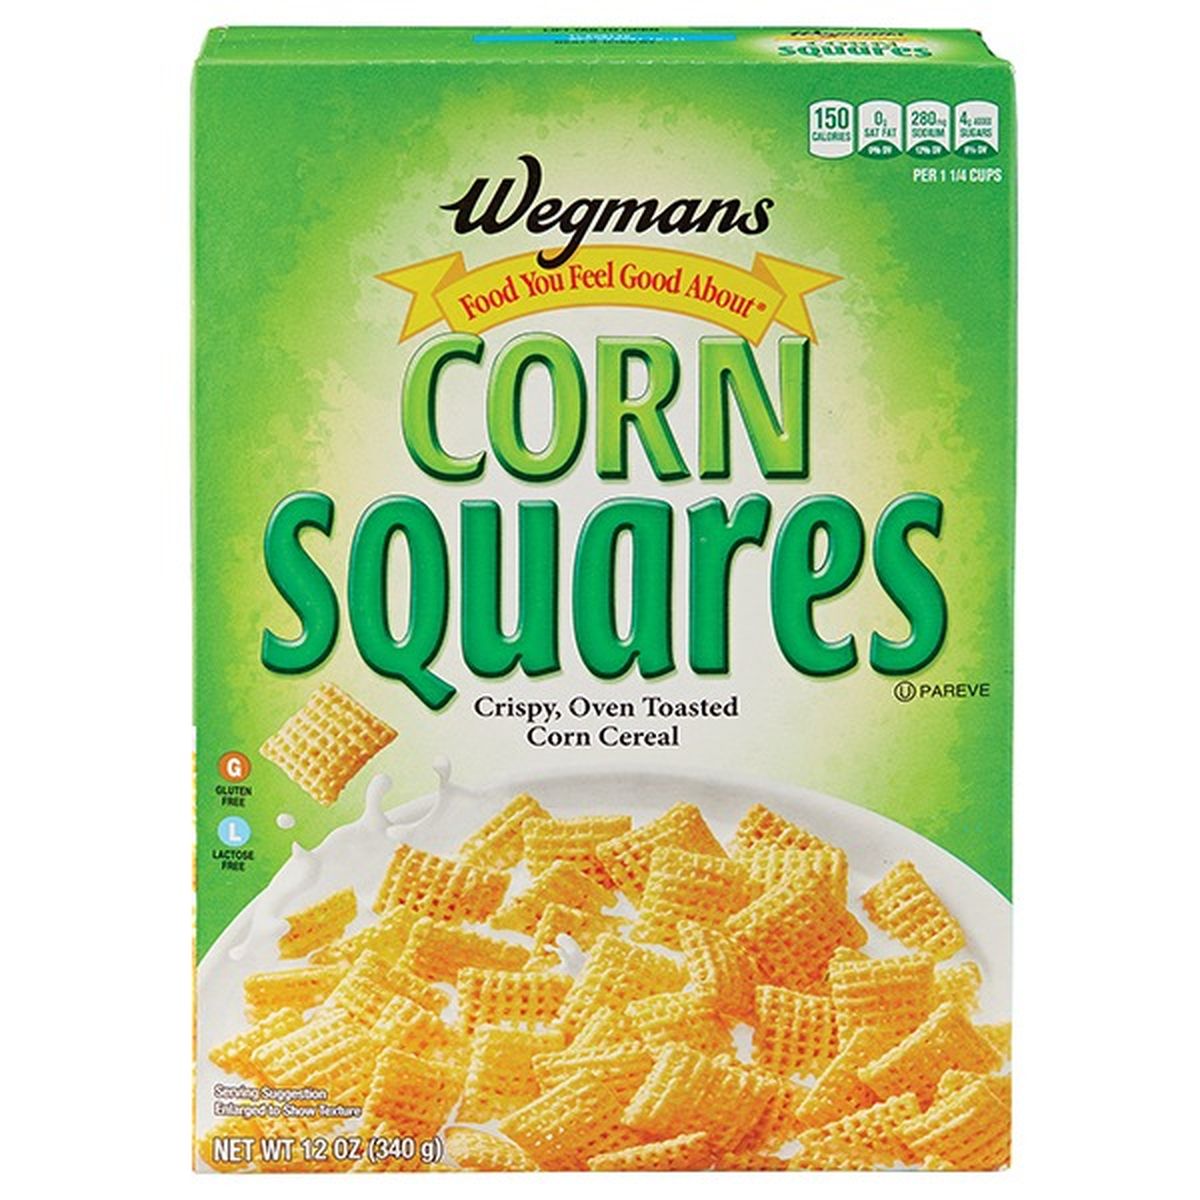 Calories in Wegmans Corn Squares Cereal